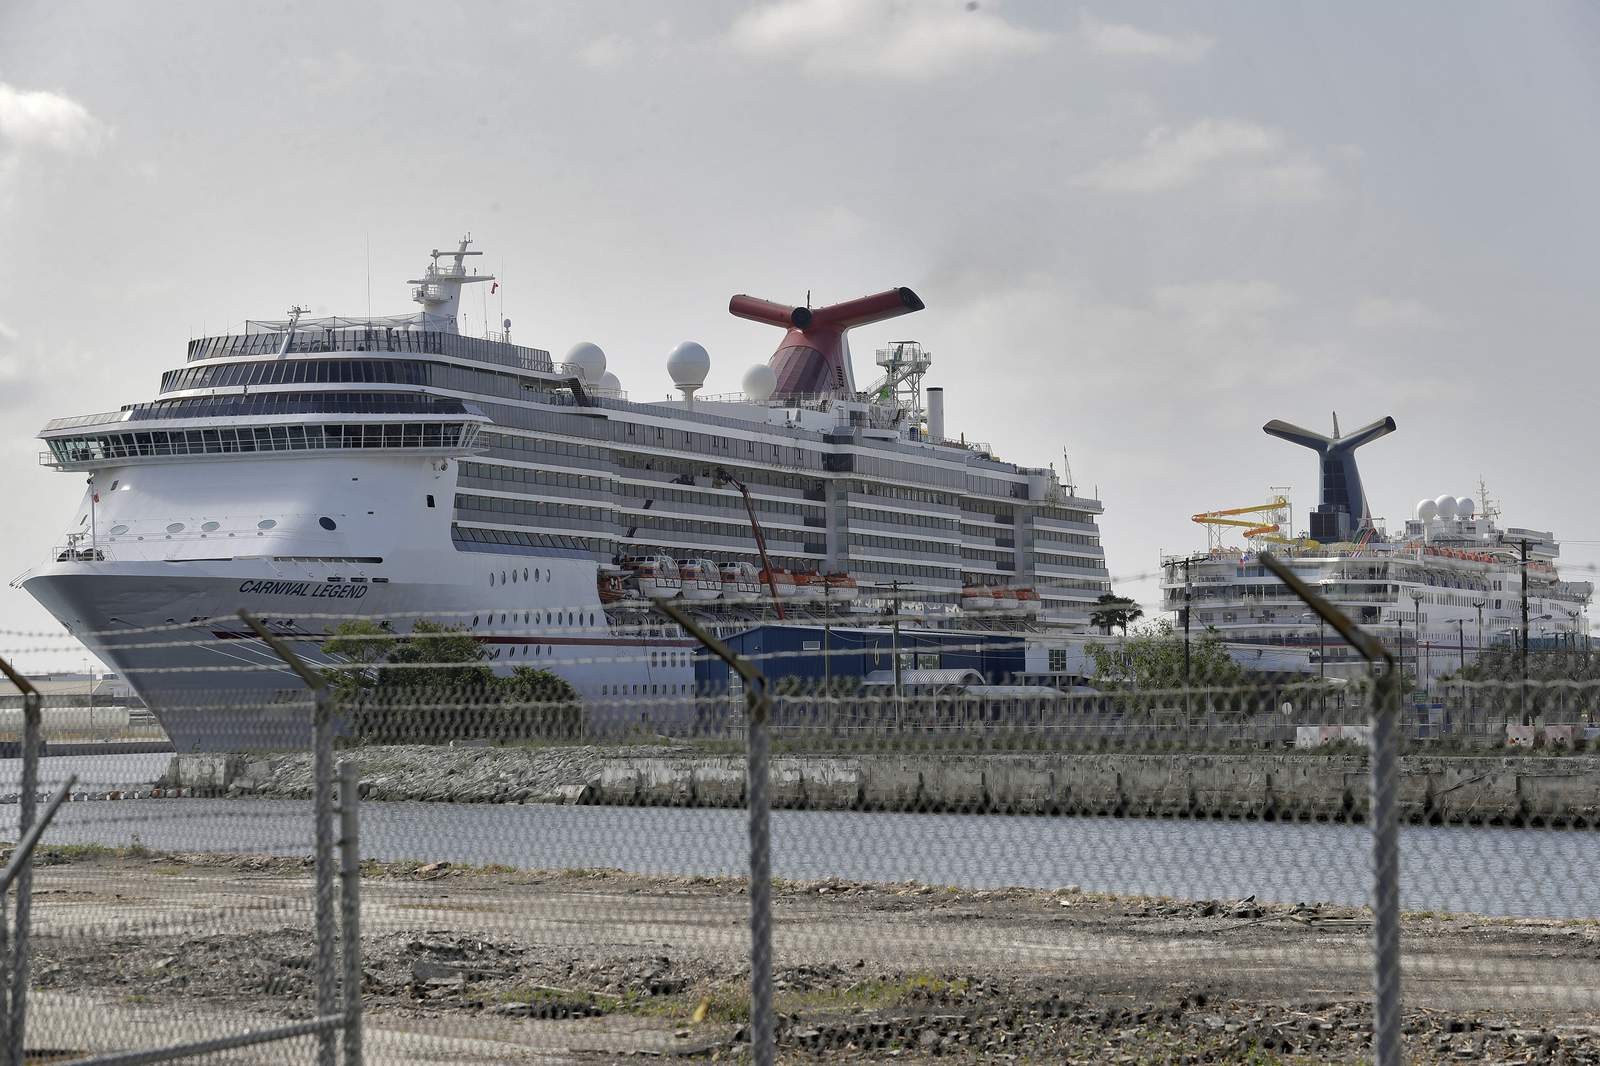 Port Canaveral cuts 115 jobs through layoffs, furloughs, attrition